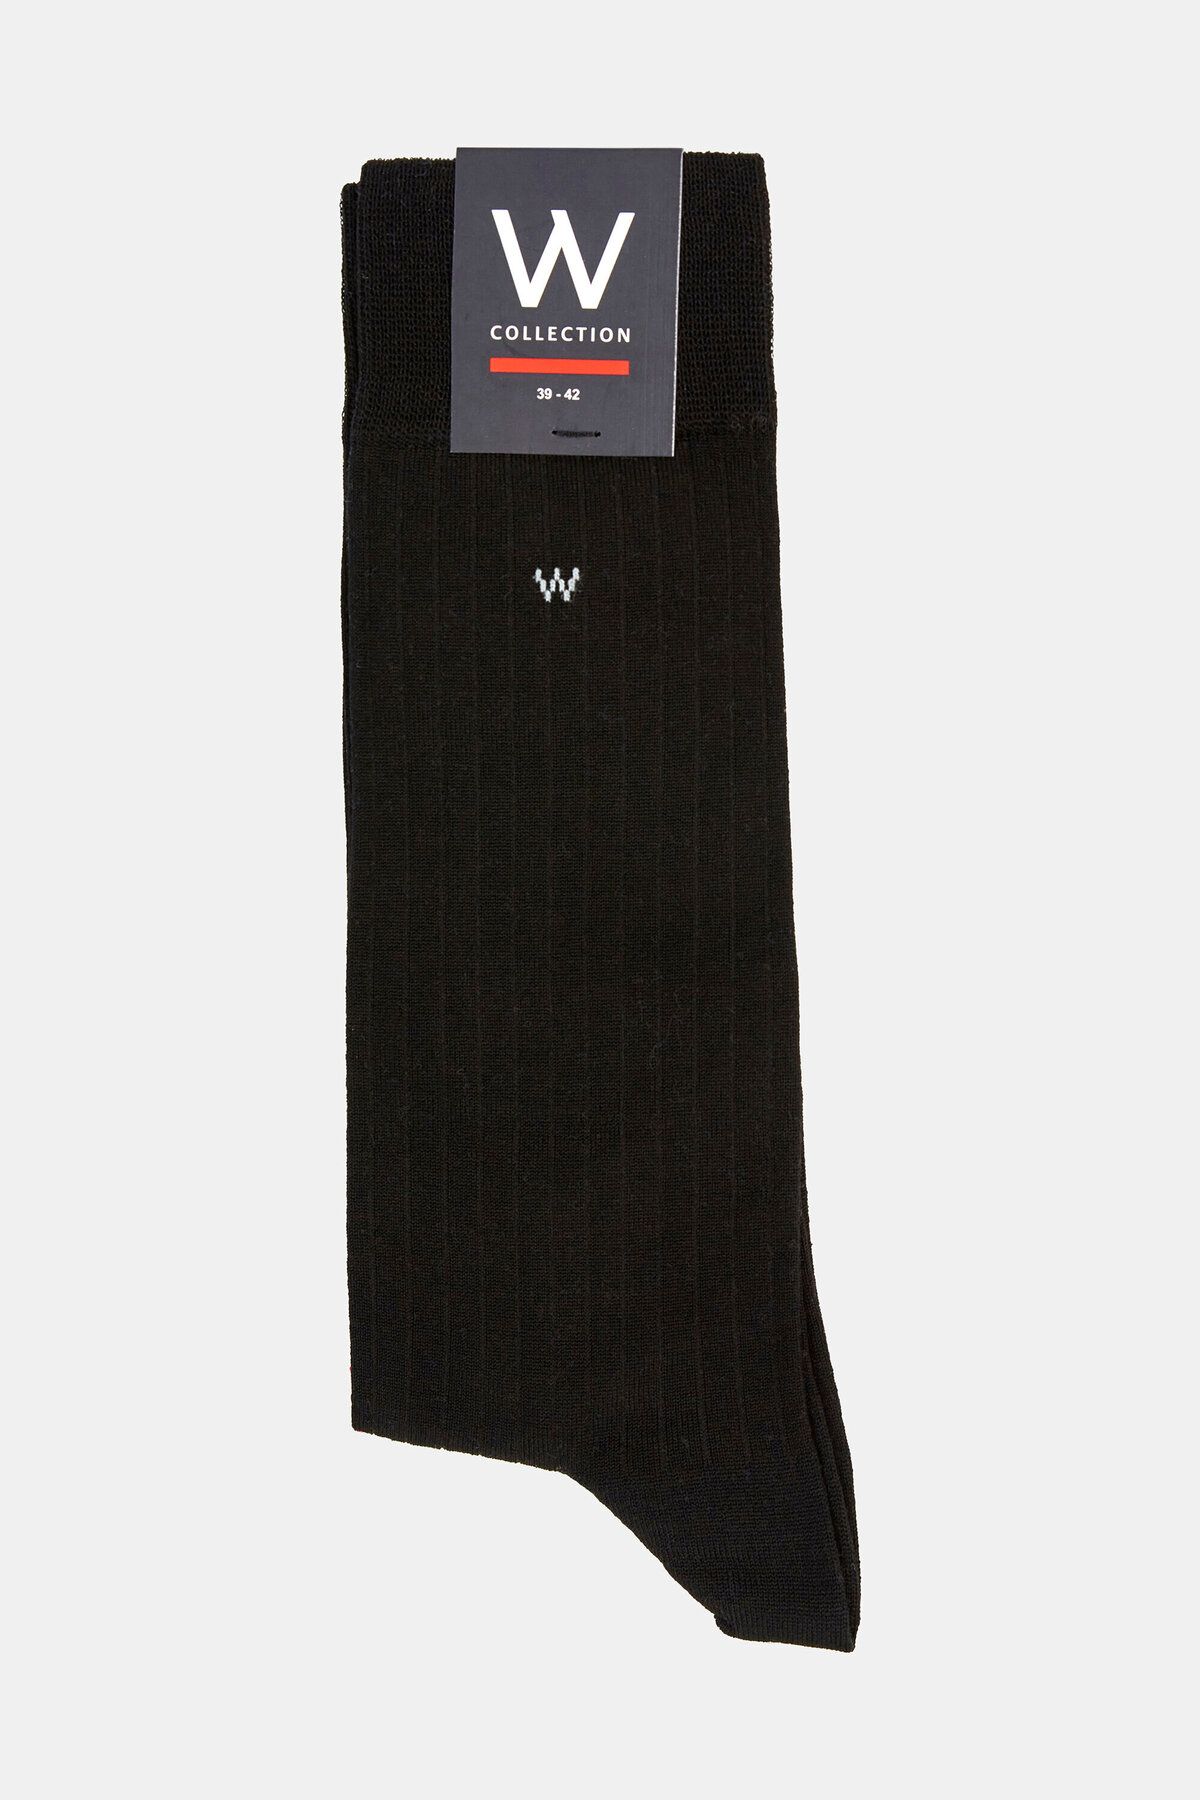 W Collection Siyah Uzun Soket Çorap